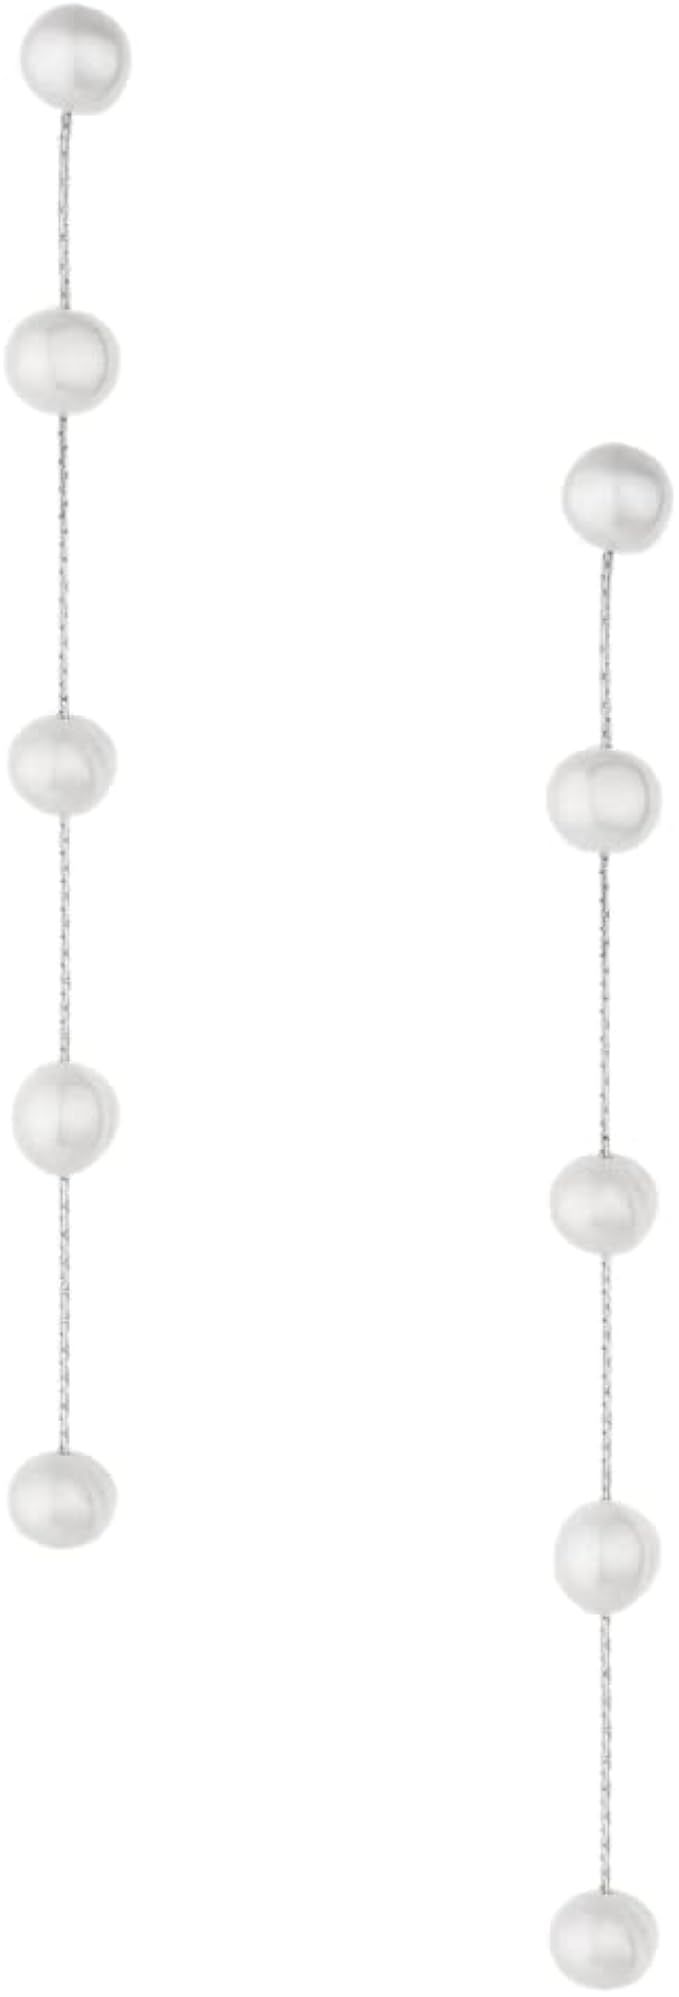 Ettika Gold Earrings For Women. Pearl Earrings, Dripping with Freshwater Pearls Delicate Drop Ear... | Amazon (US)